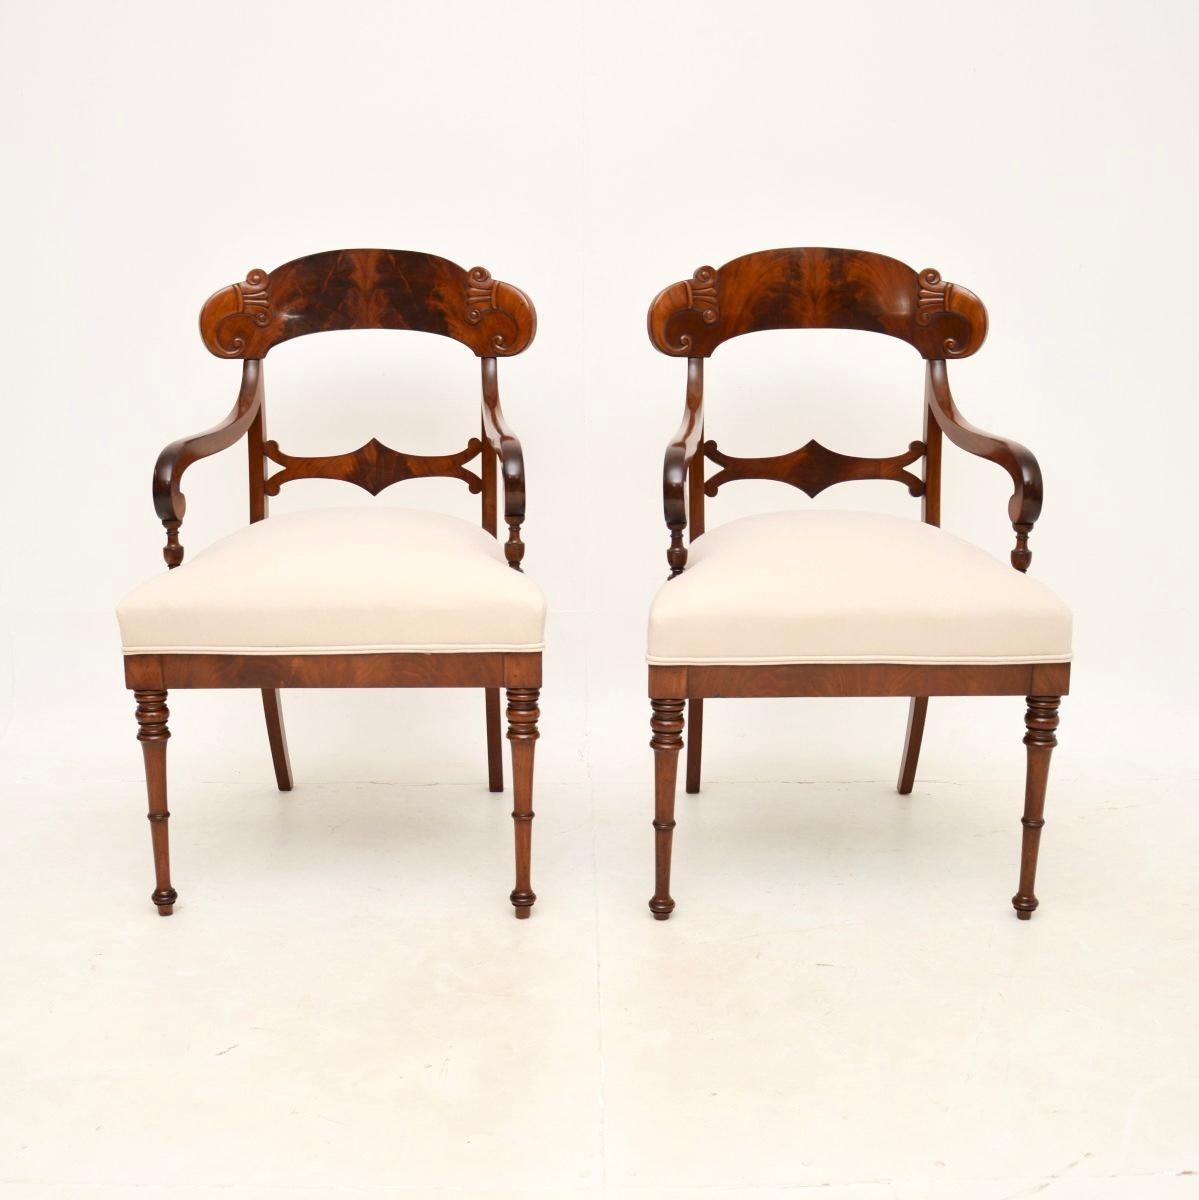 Ein wunderschönes Paar antiker schwedischer Sessel. Sie wurden vor kurzem aus Schweden importiert und stammen aus der Zeit zwischen 1850 und 1870.

Sie sind von äußerst feiner Qualität, mit wunderschön geschnitzten Details, fein gedrechselten Beinen